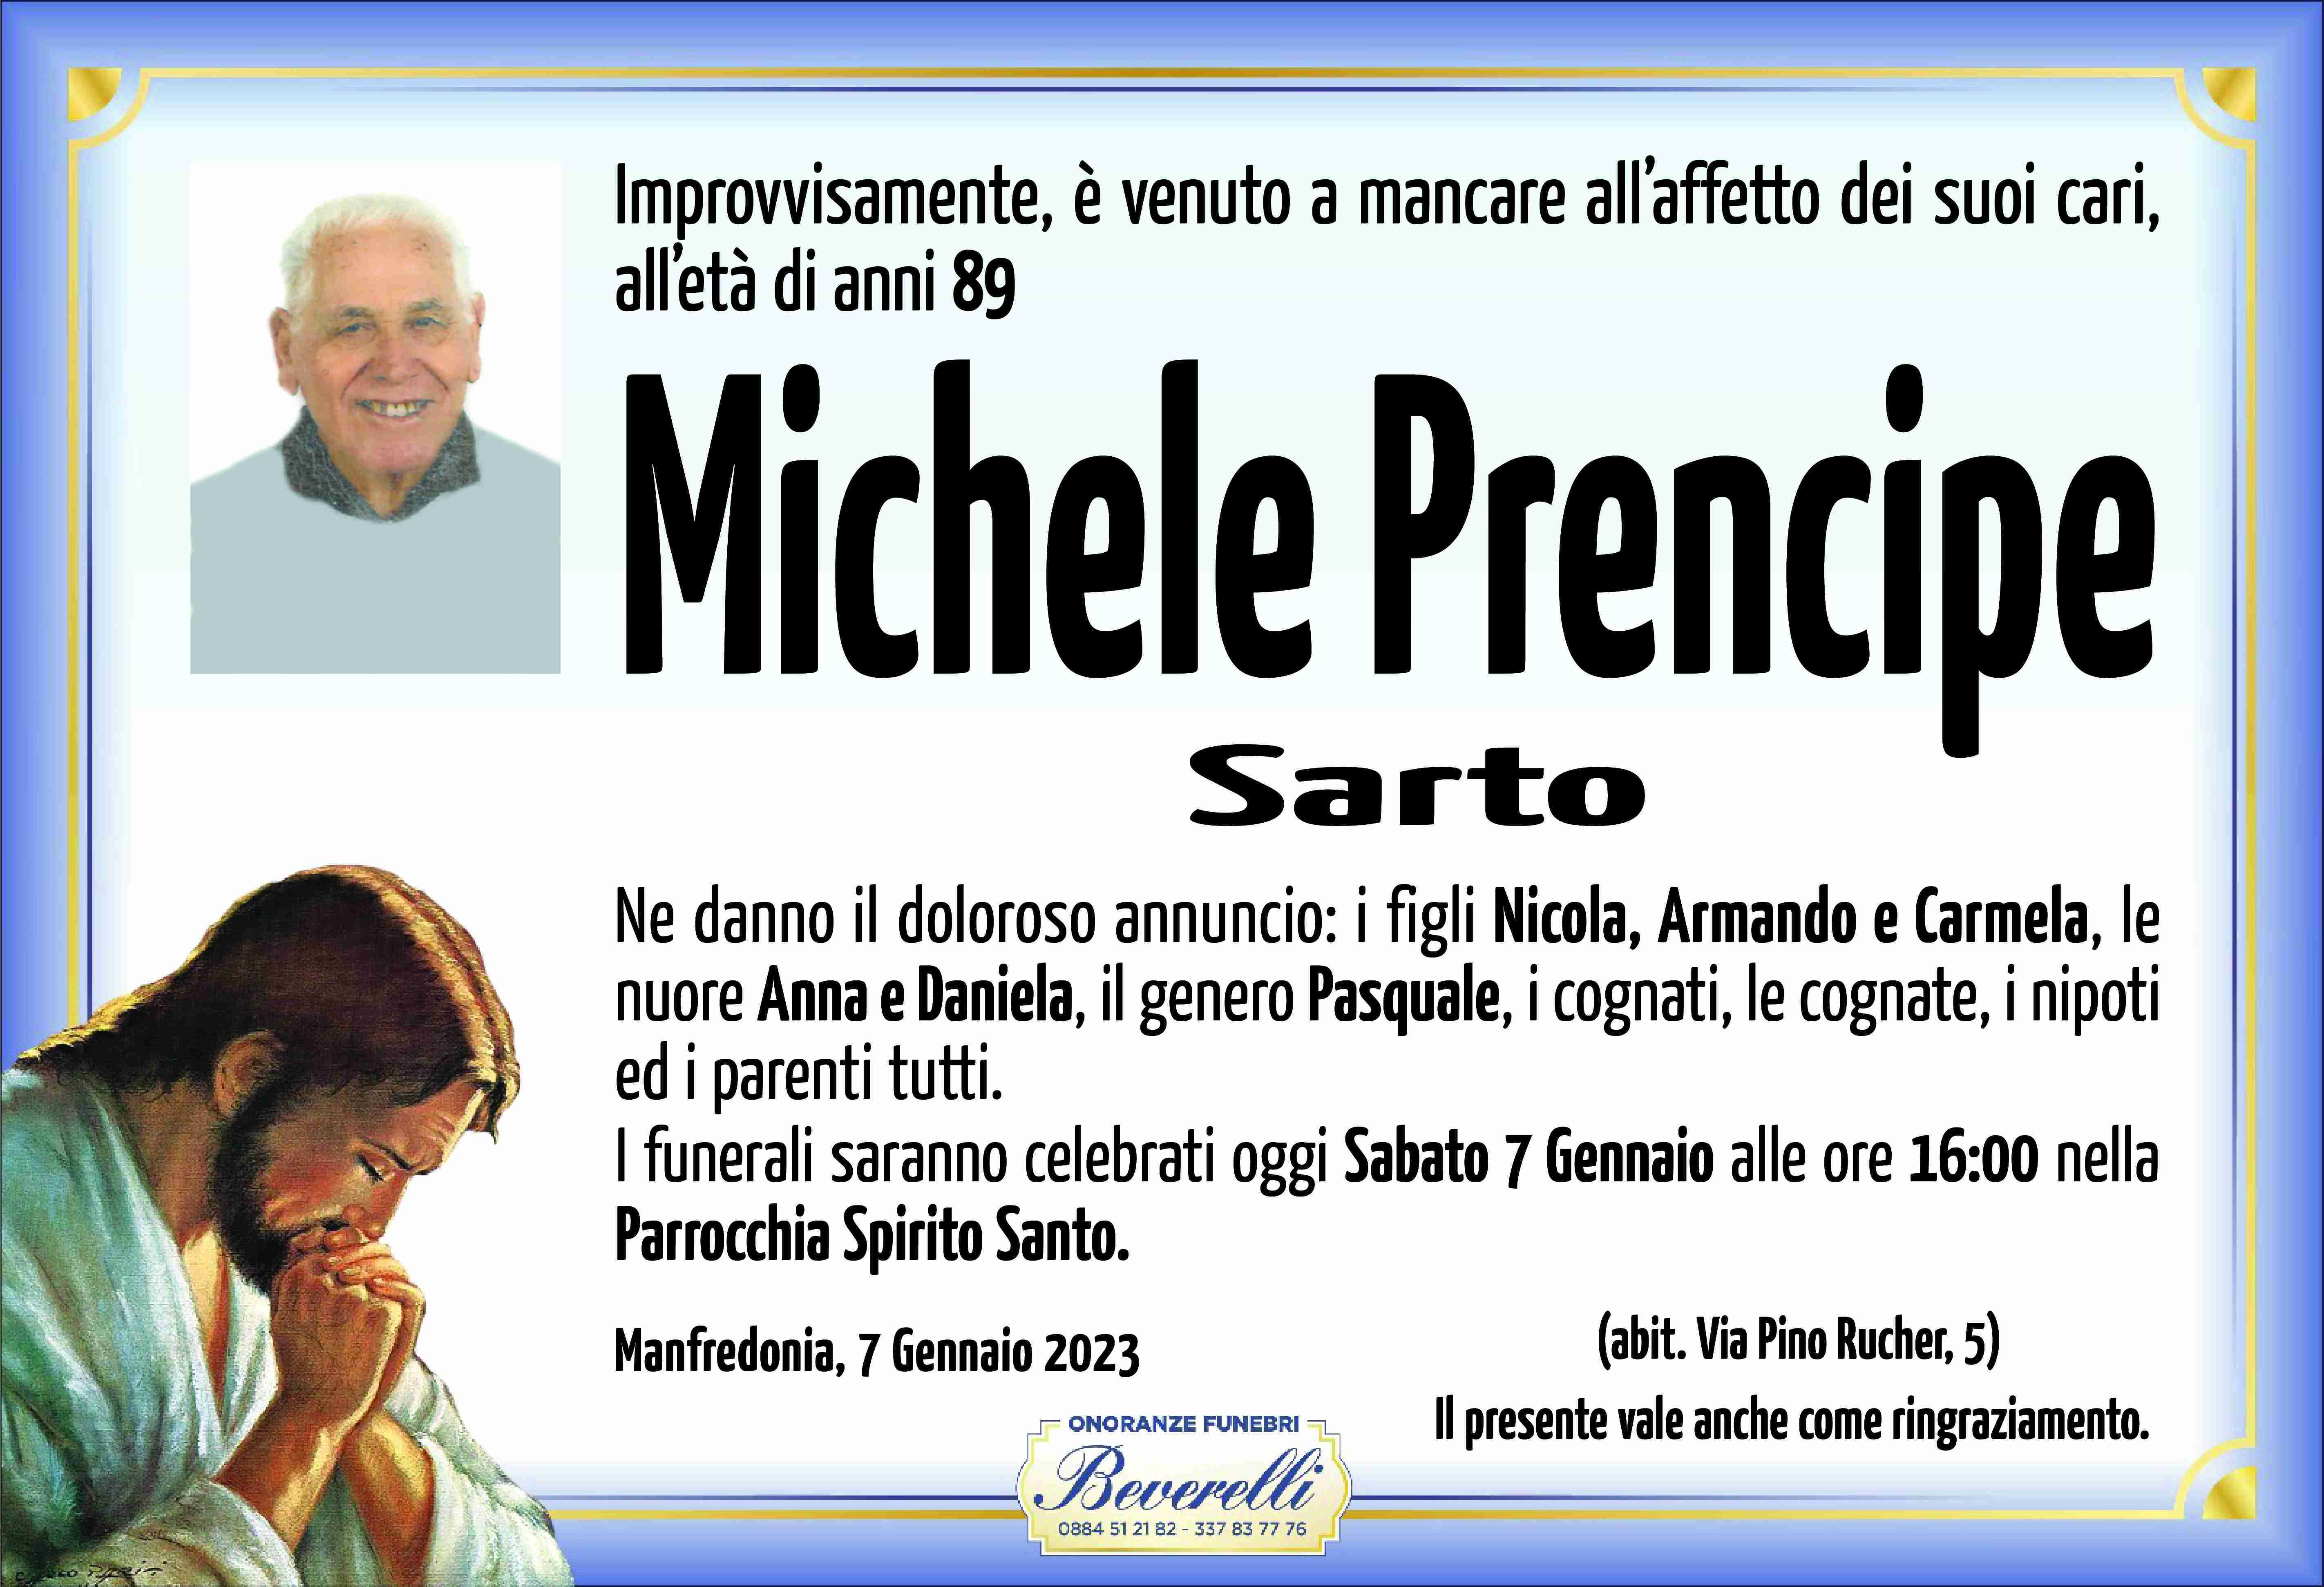 Michele Prencipe